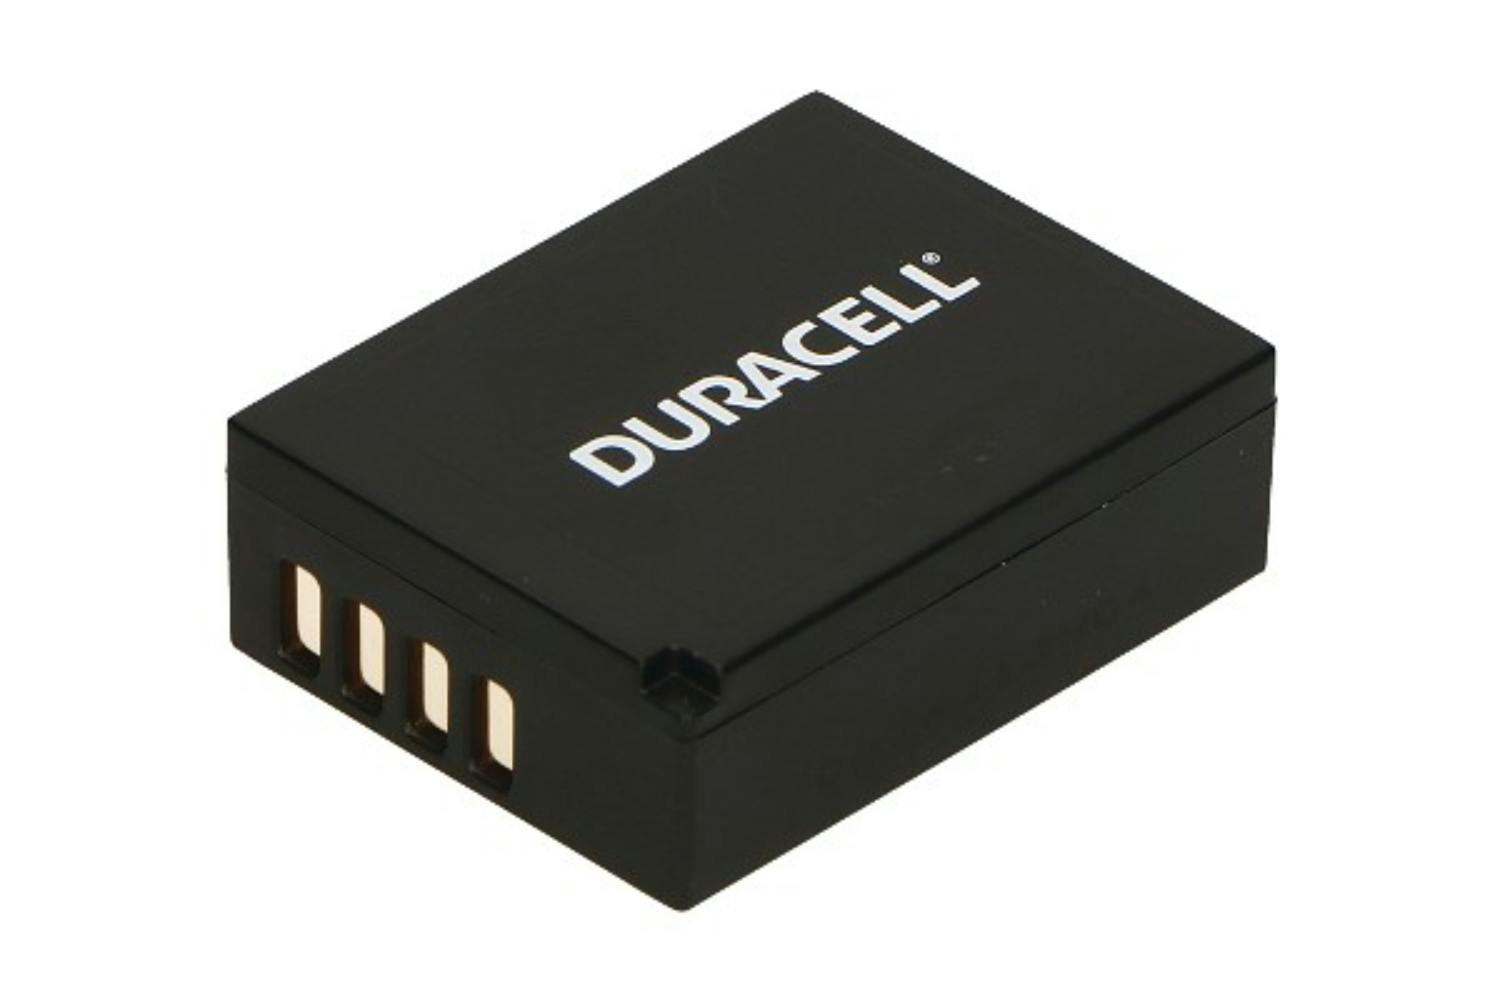 Duracell 2150mAh Digital Camera Battery